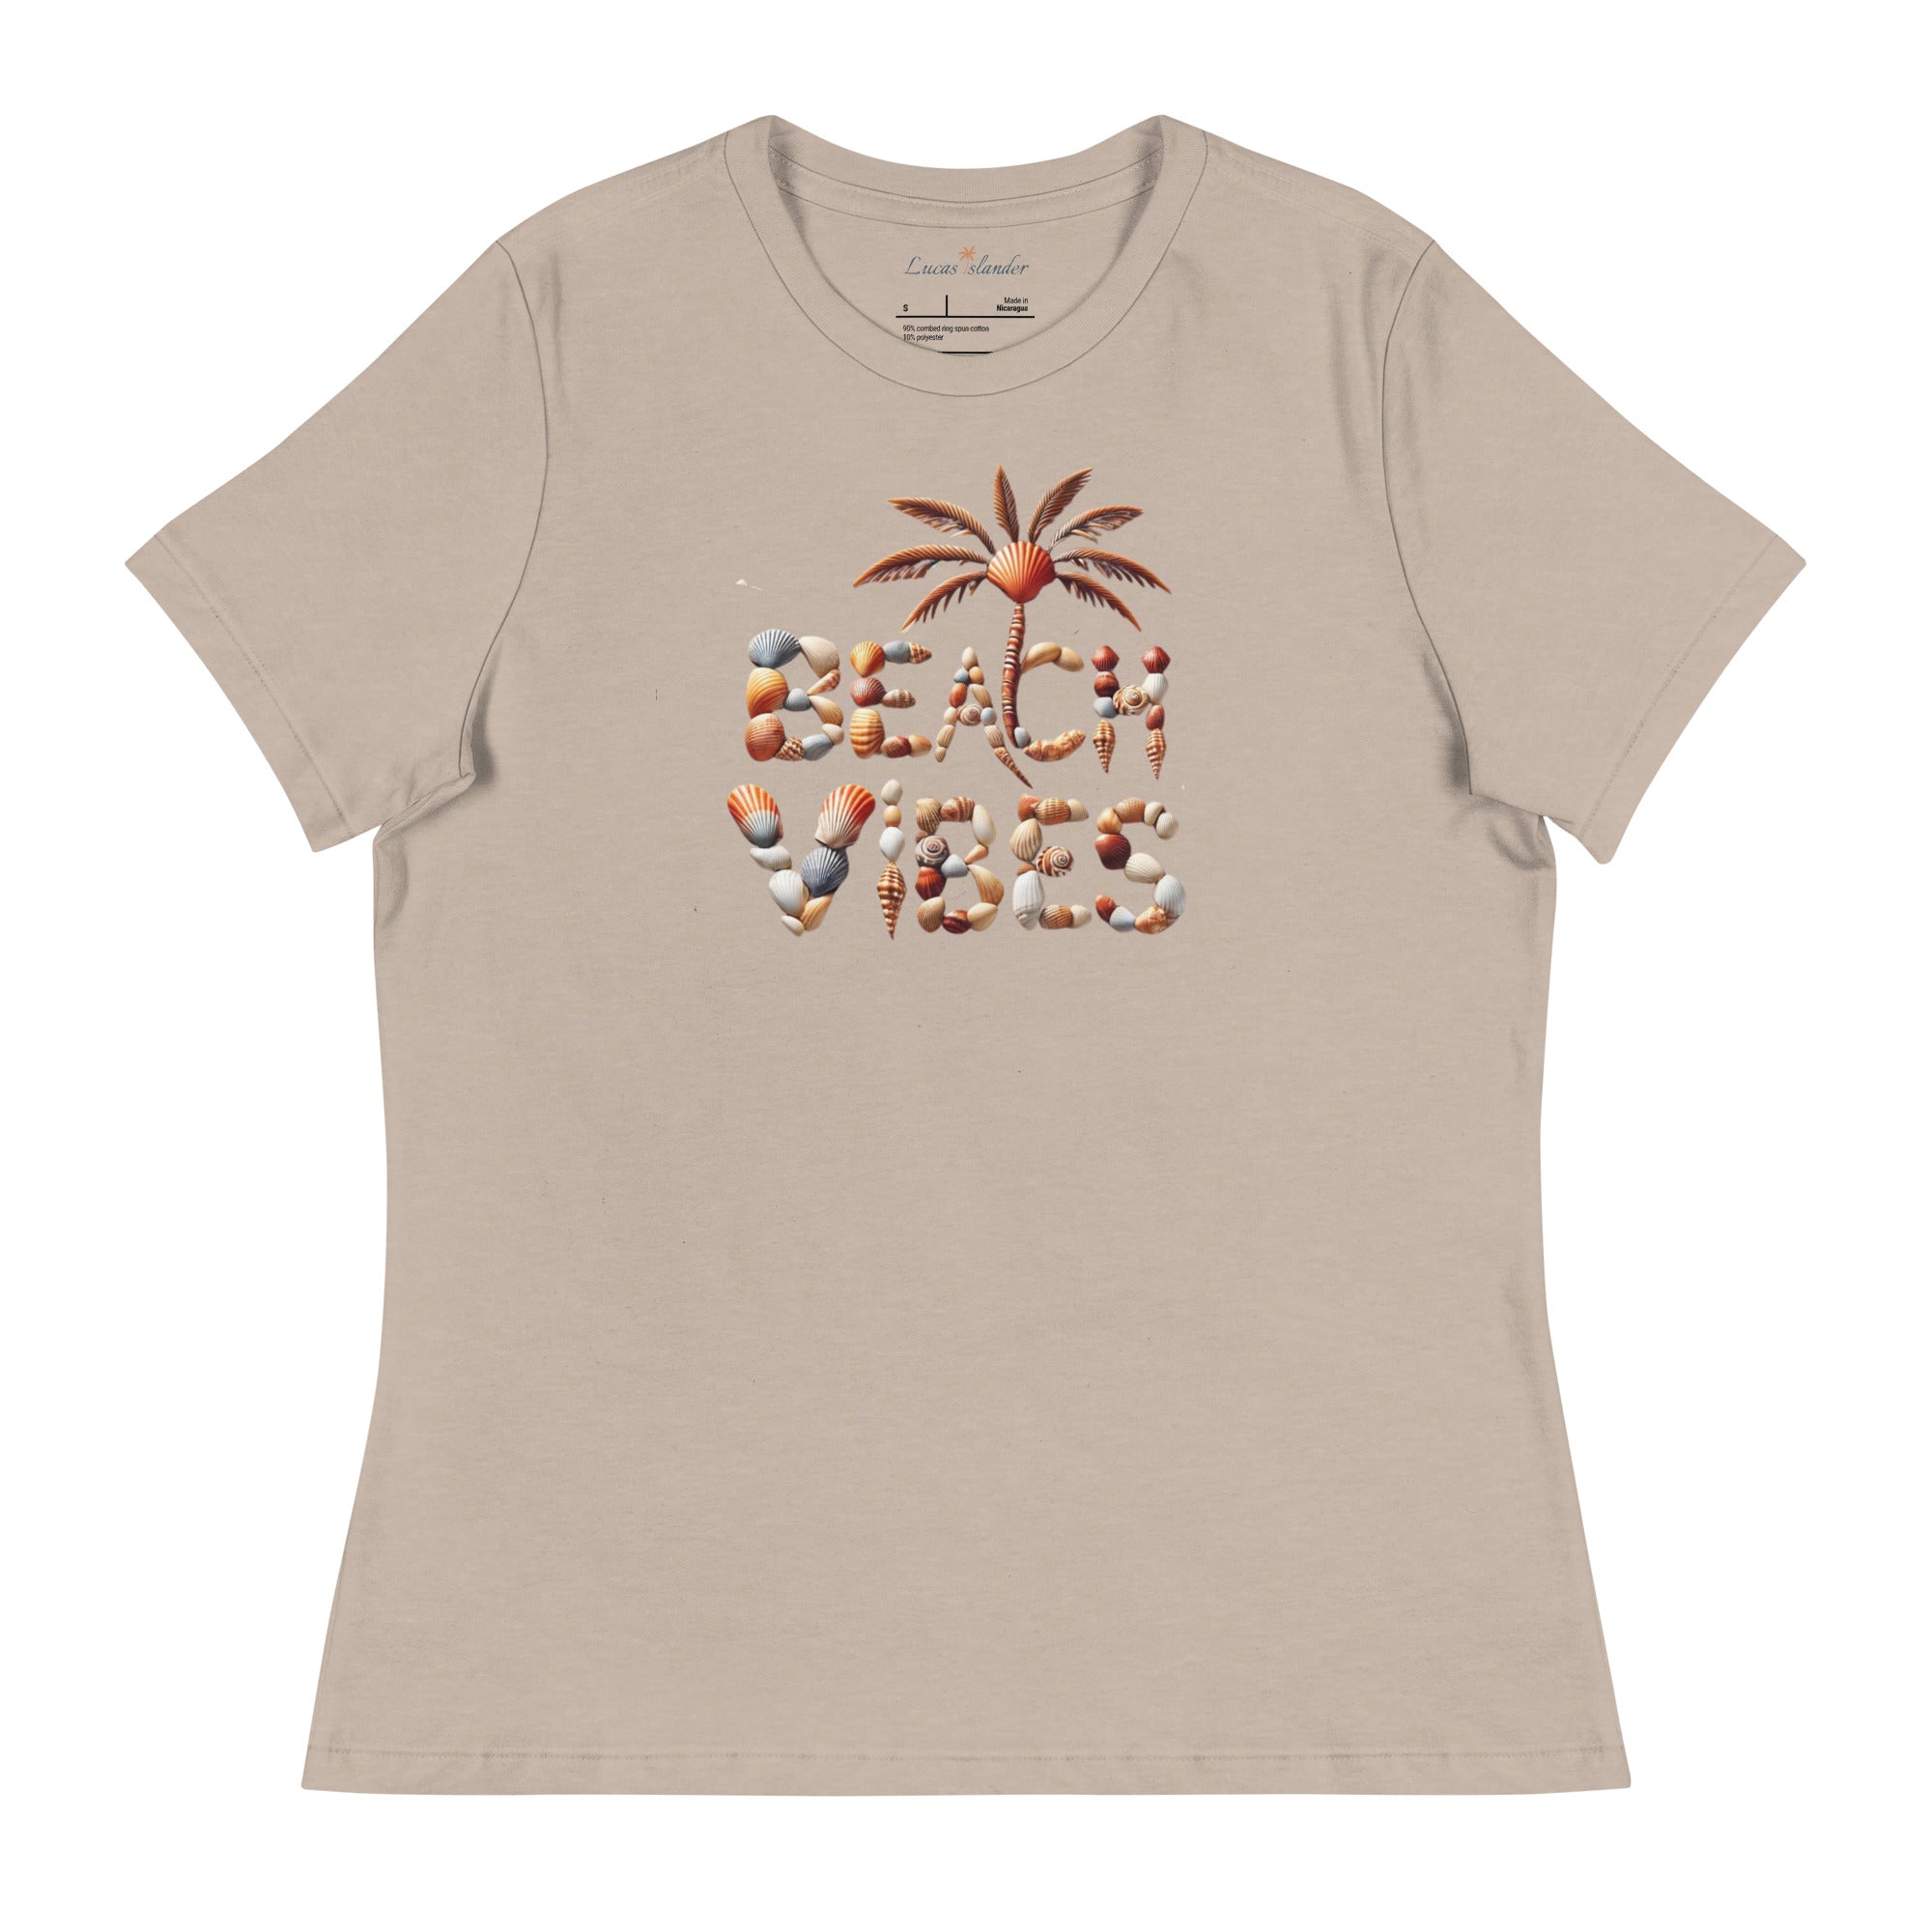 Explore Coastal Comfort: Beach Vibes Women's T-Shirt | Lucas Islander Relaxed T-Shirt